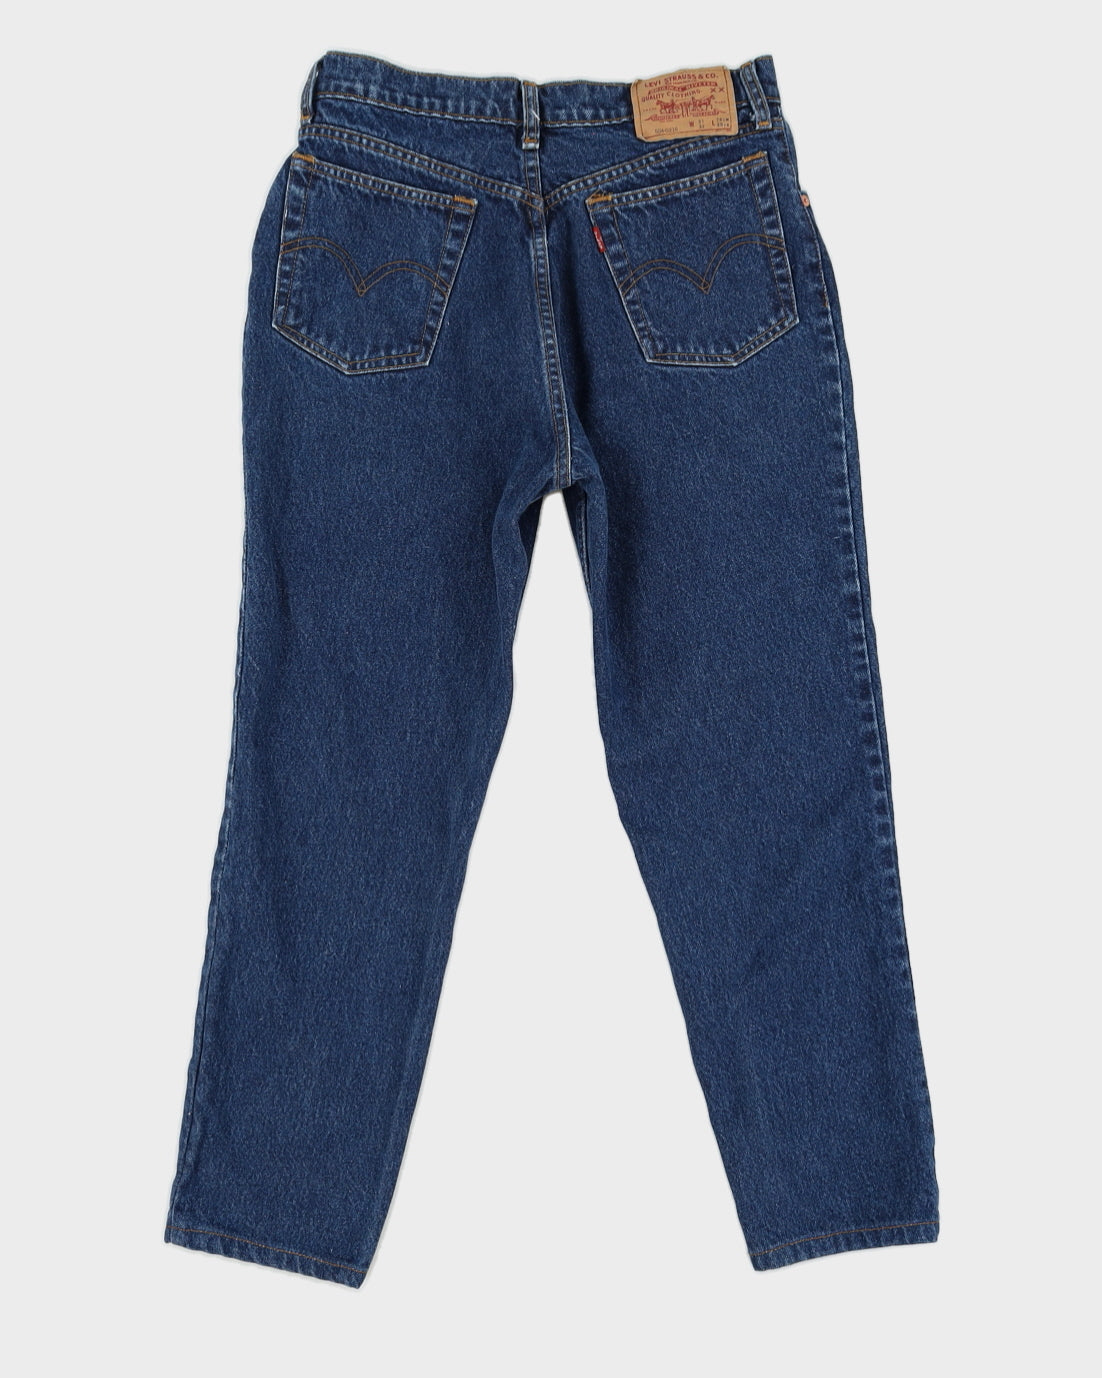 Vintage 90s Levi's 504 Denim Jeans - W30 L26